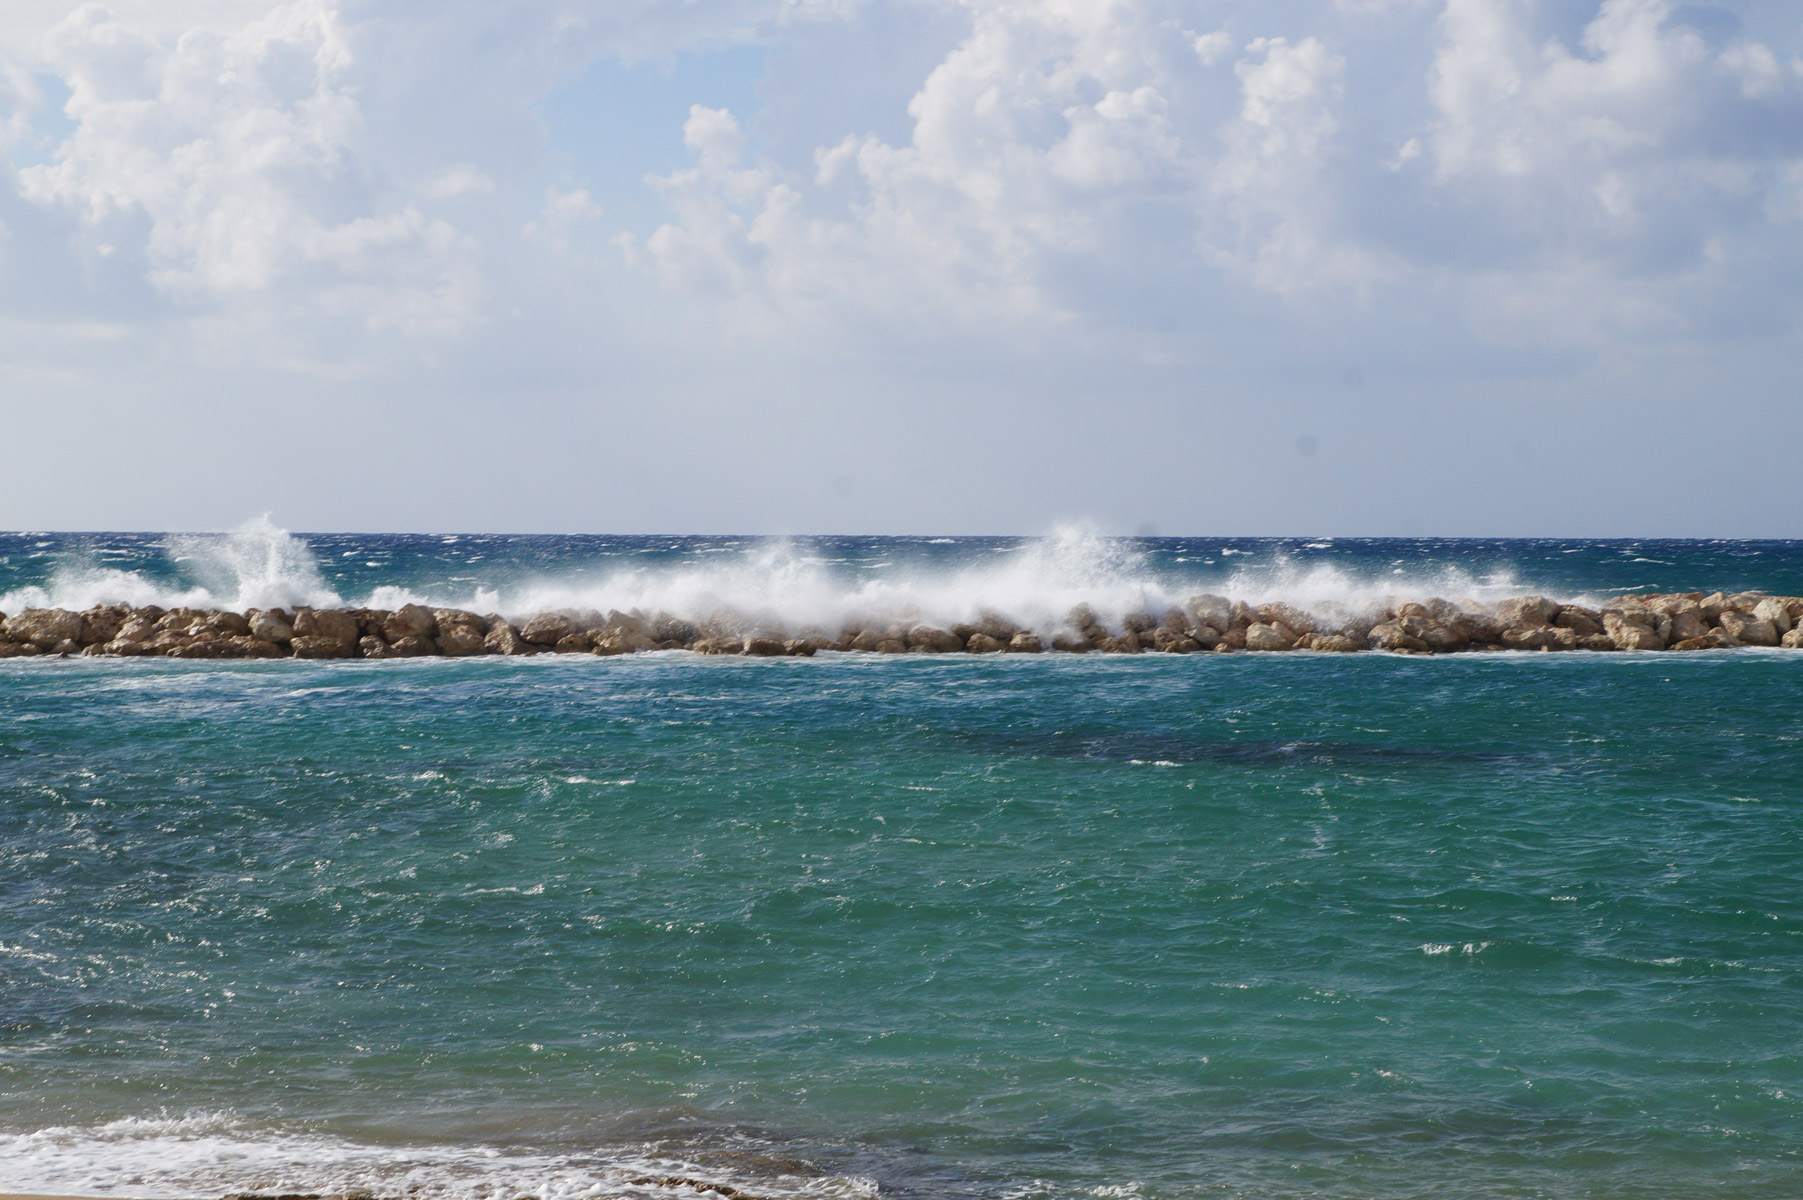 Волны разбиваются в мелкие брызги о волнорез.
Пафос, Кипр, осень 2018